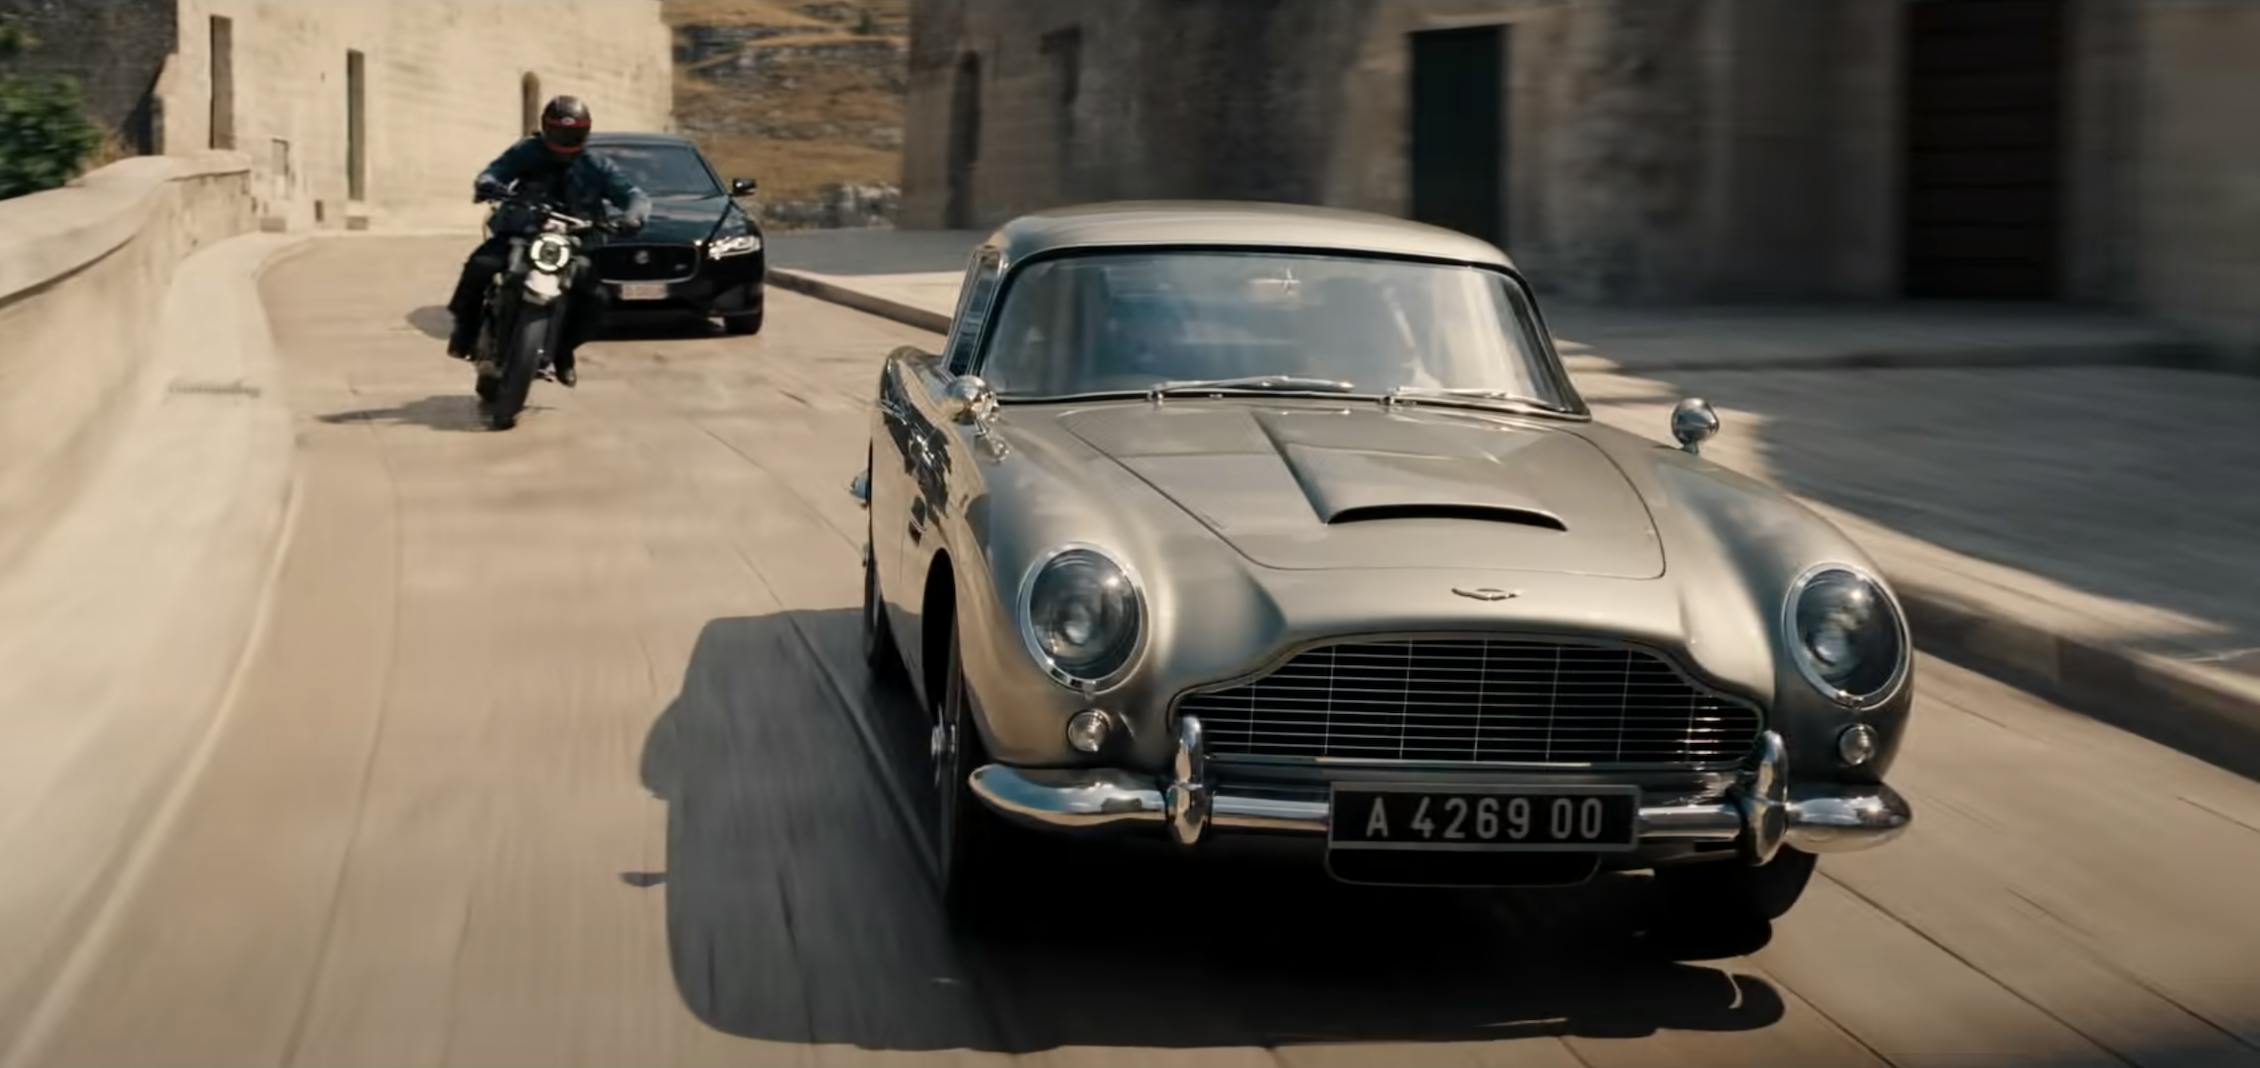 James Bond No Time to Die Aston Martin DB5